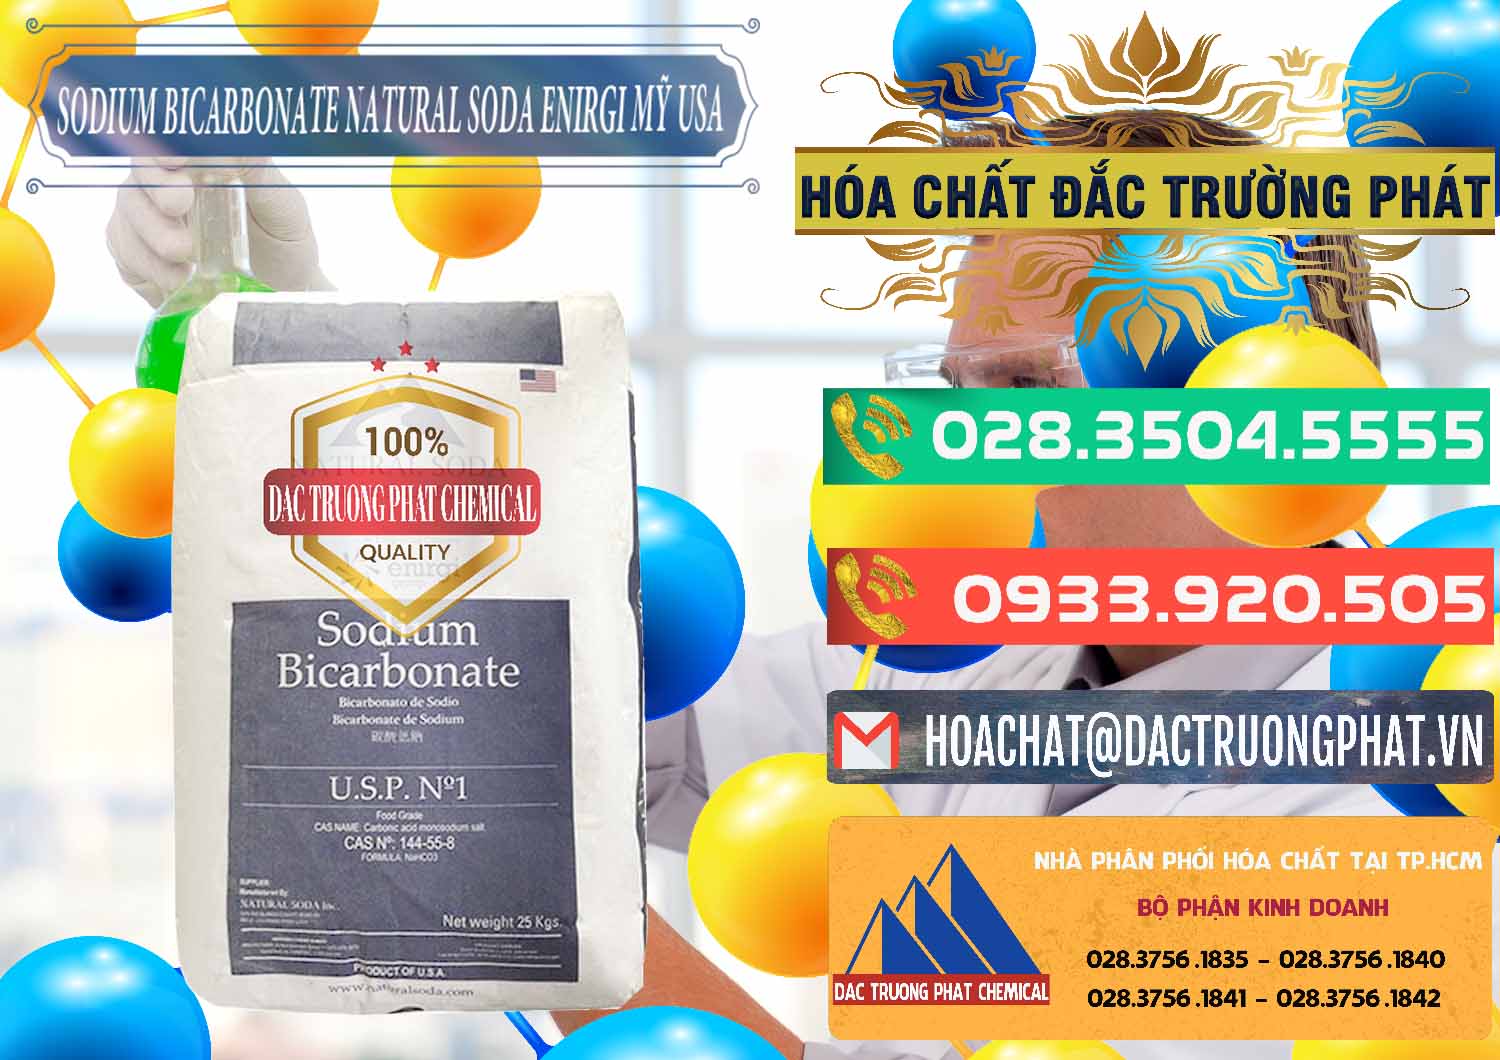 Công ty chuyên bán - phân phối Sodium Bicarbonate – Bicar NaHCO3 Food Grade Natural Soda Enirgi Mỹ USA - 0257 - Nơi phân phối & kinh doanh hóa chất tại TP.HCM - congtyhoachat.com.vn